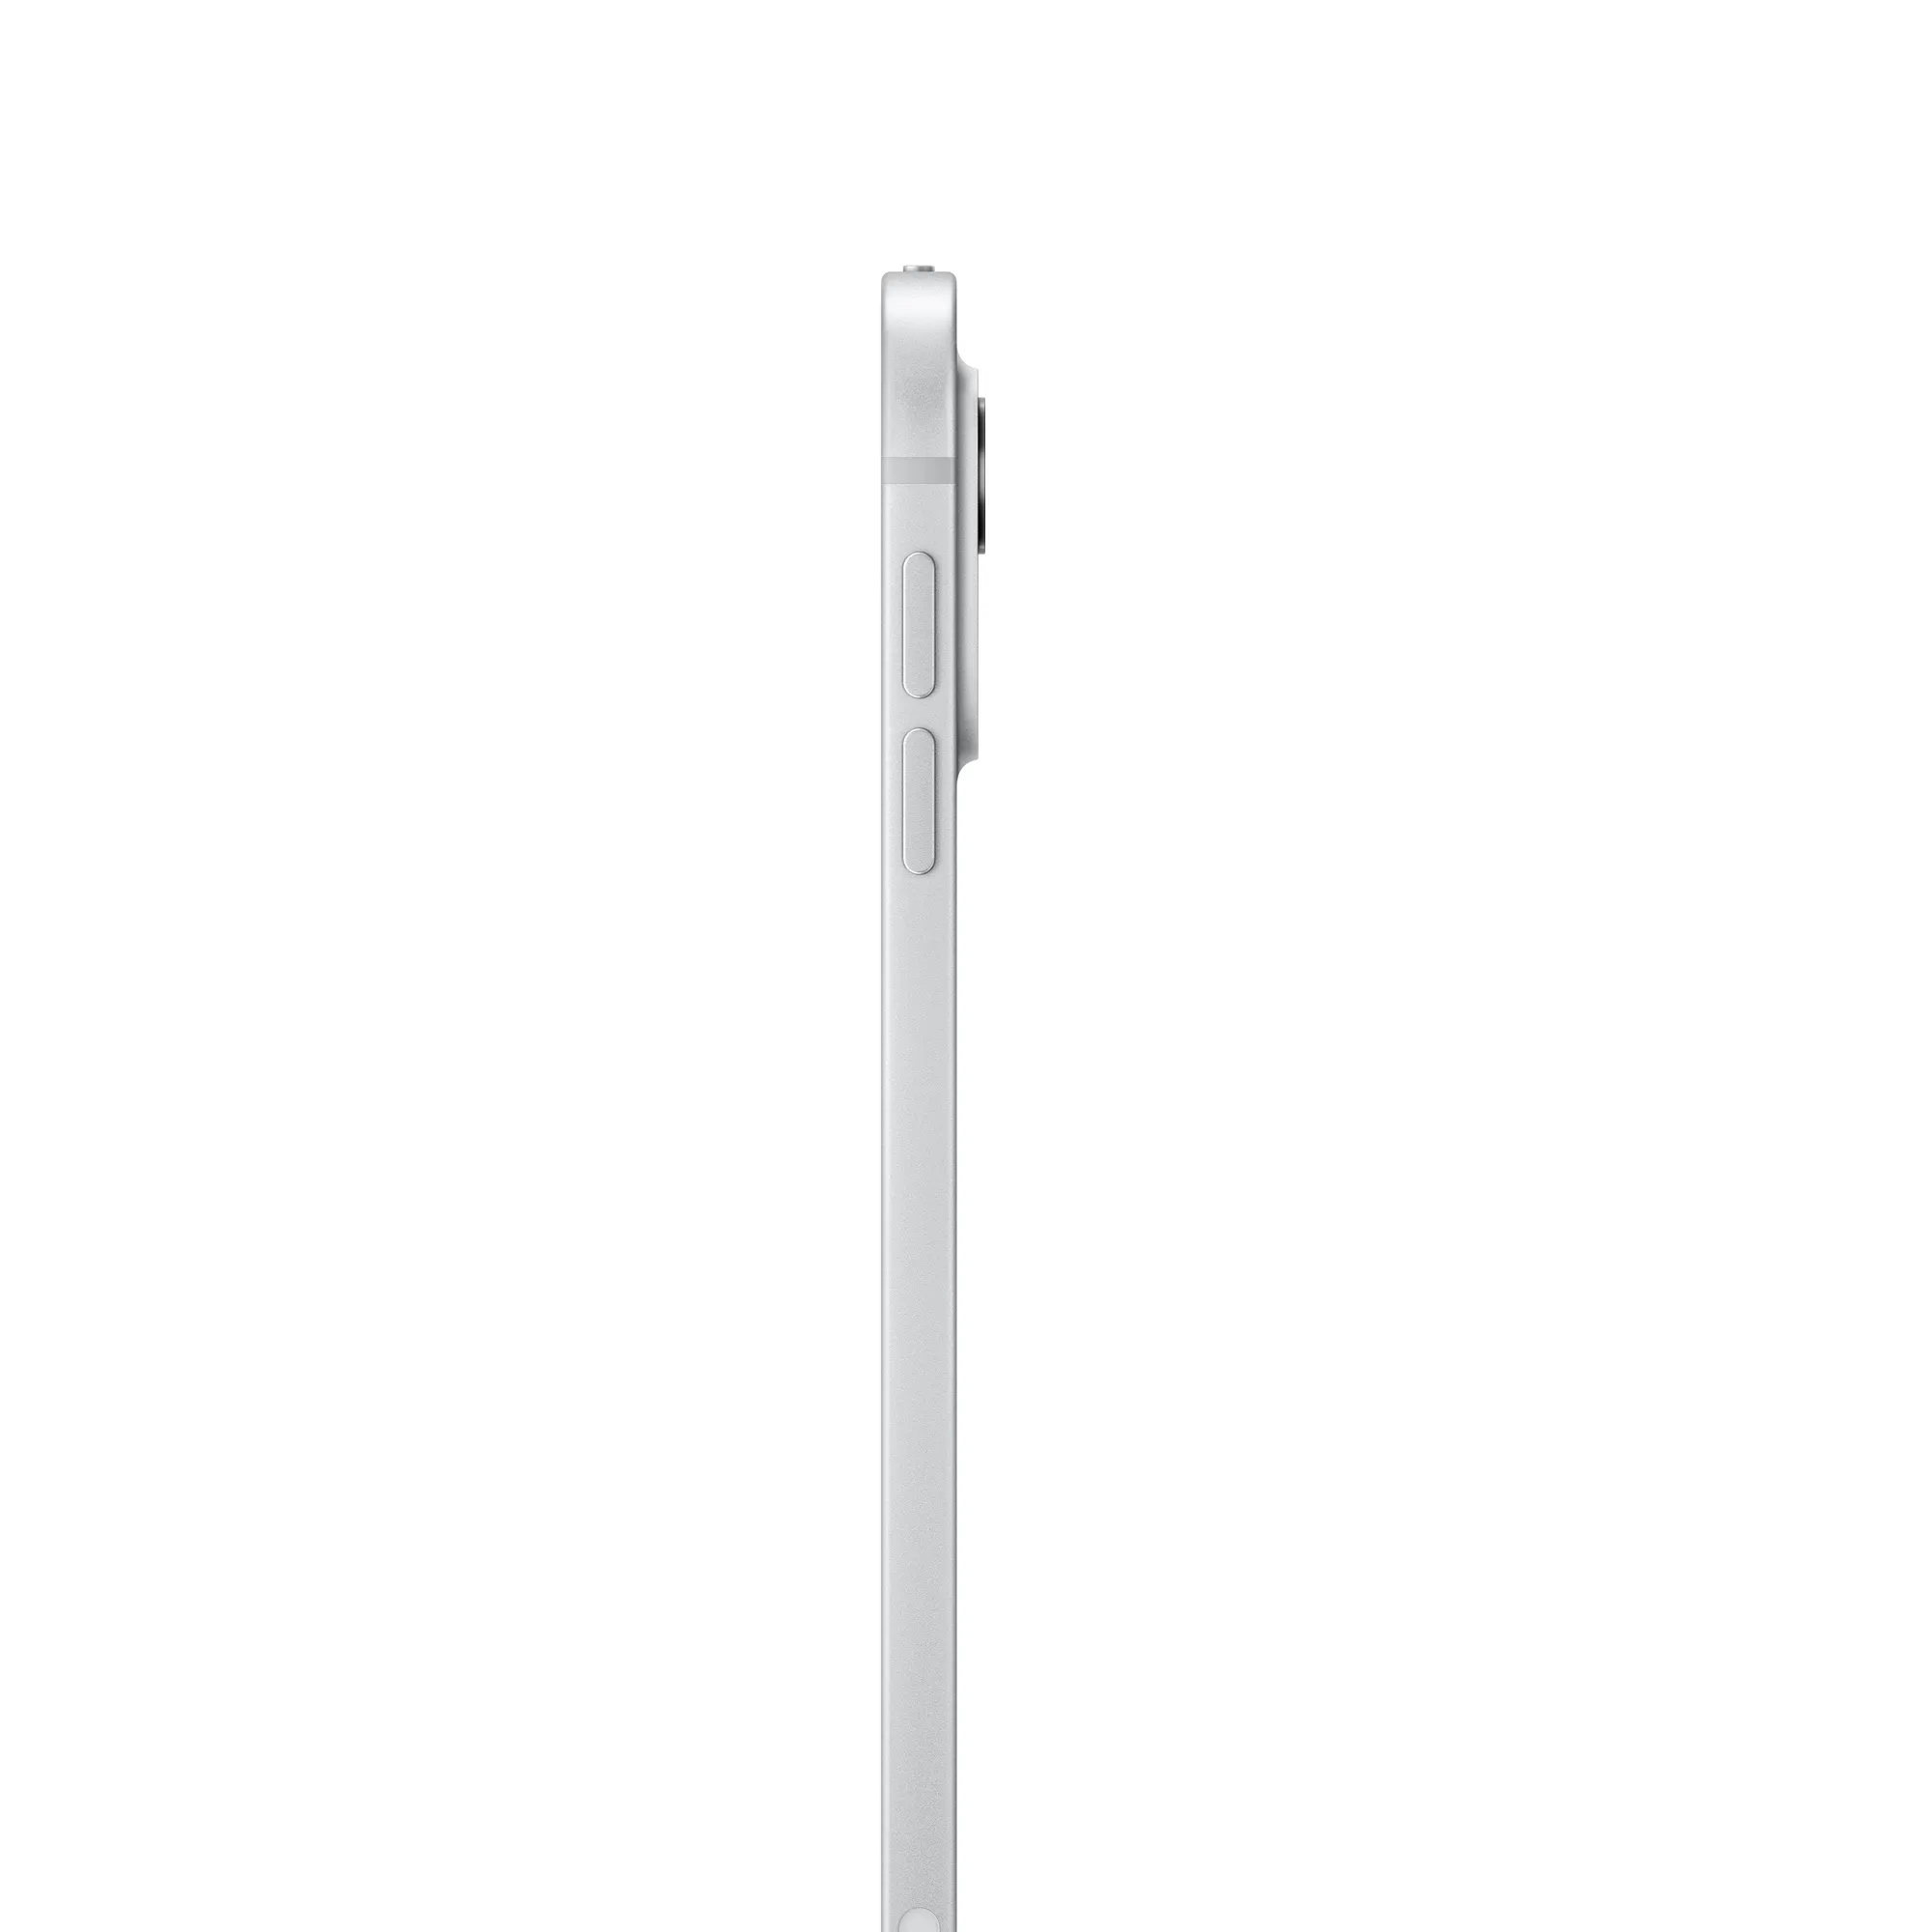 11 hüvelykes iPad Pro, Wi-Fi + Cellular, 2 TB, normál üveg – ezüst